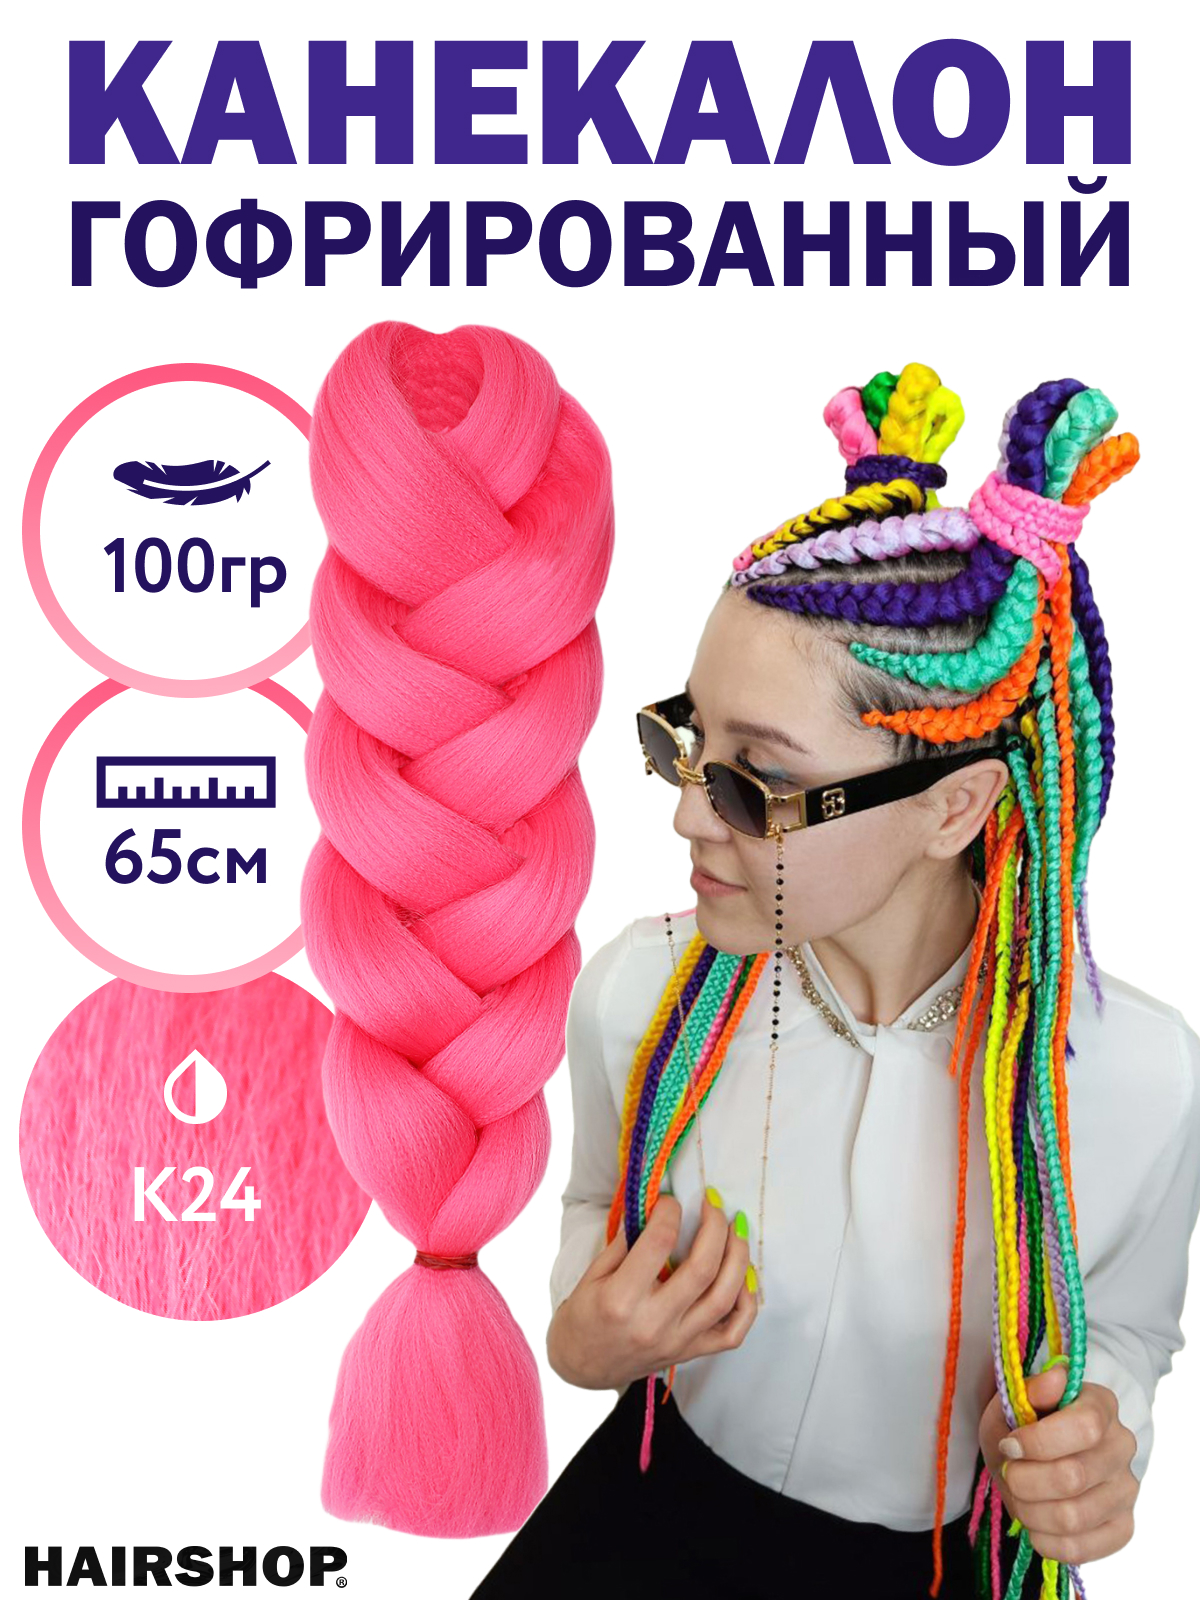 Канекалон Hairshop 2Braids К24 Темно-розовый канекалон queen fair sim braids гофрированный 65 см 90 гр русый розовый белый fr 37